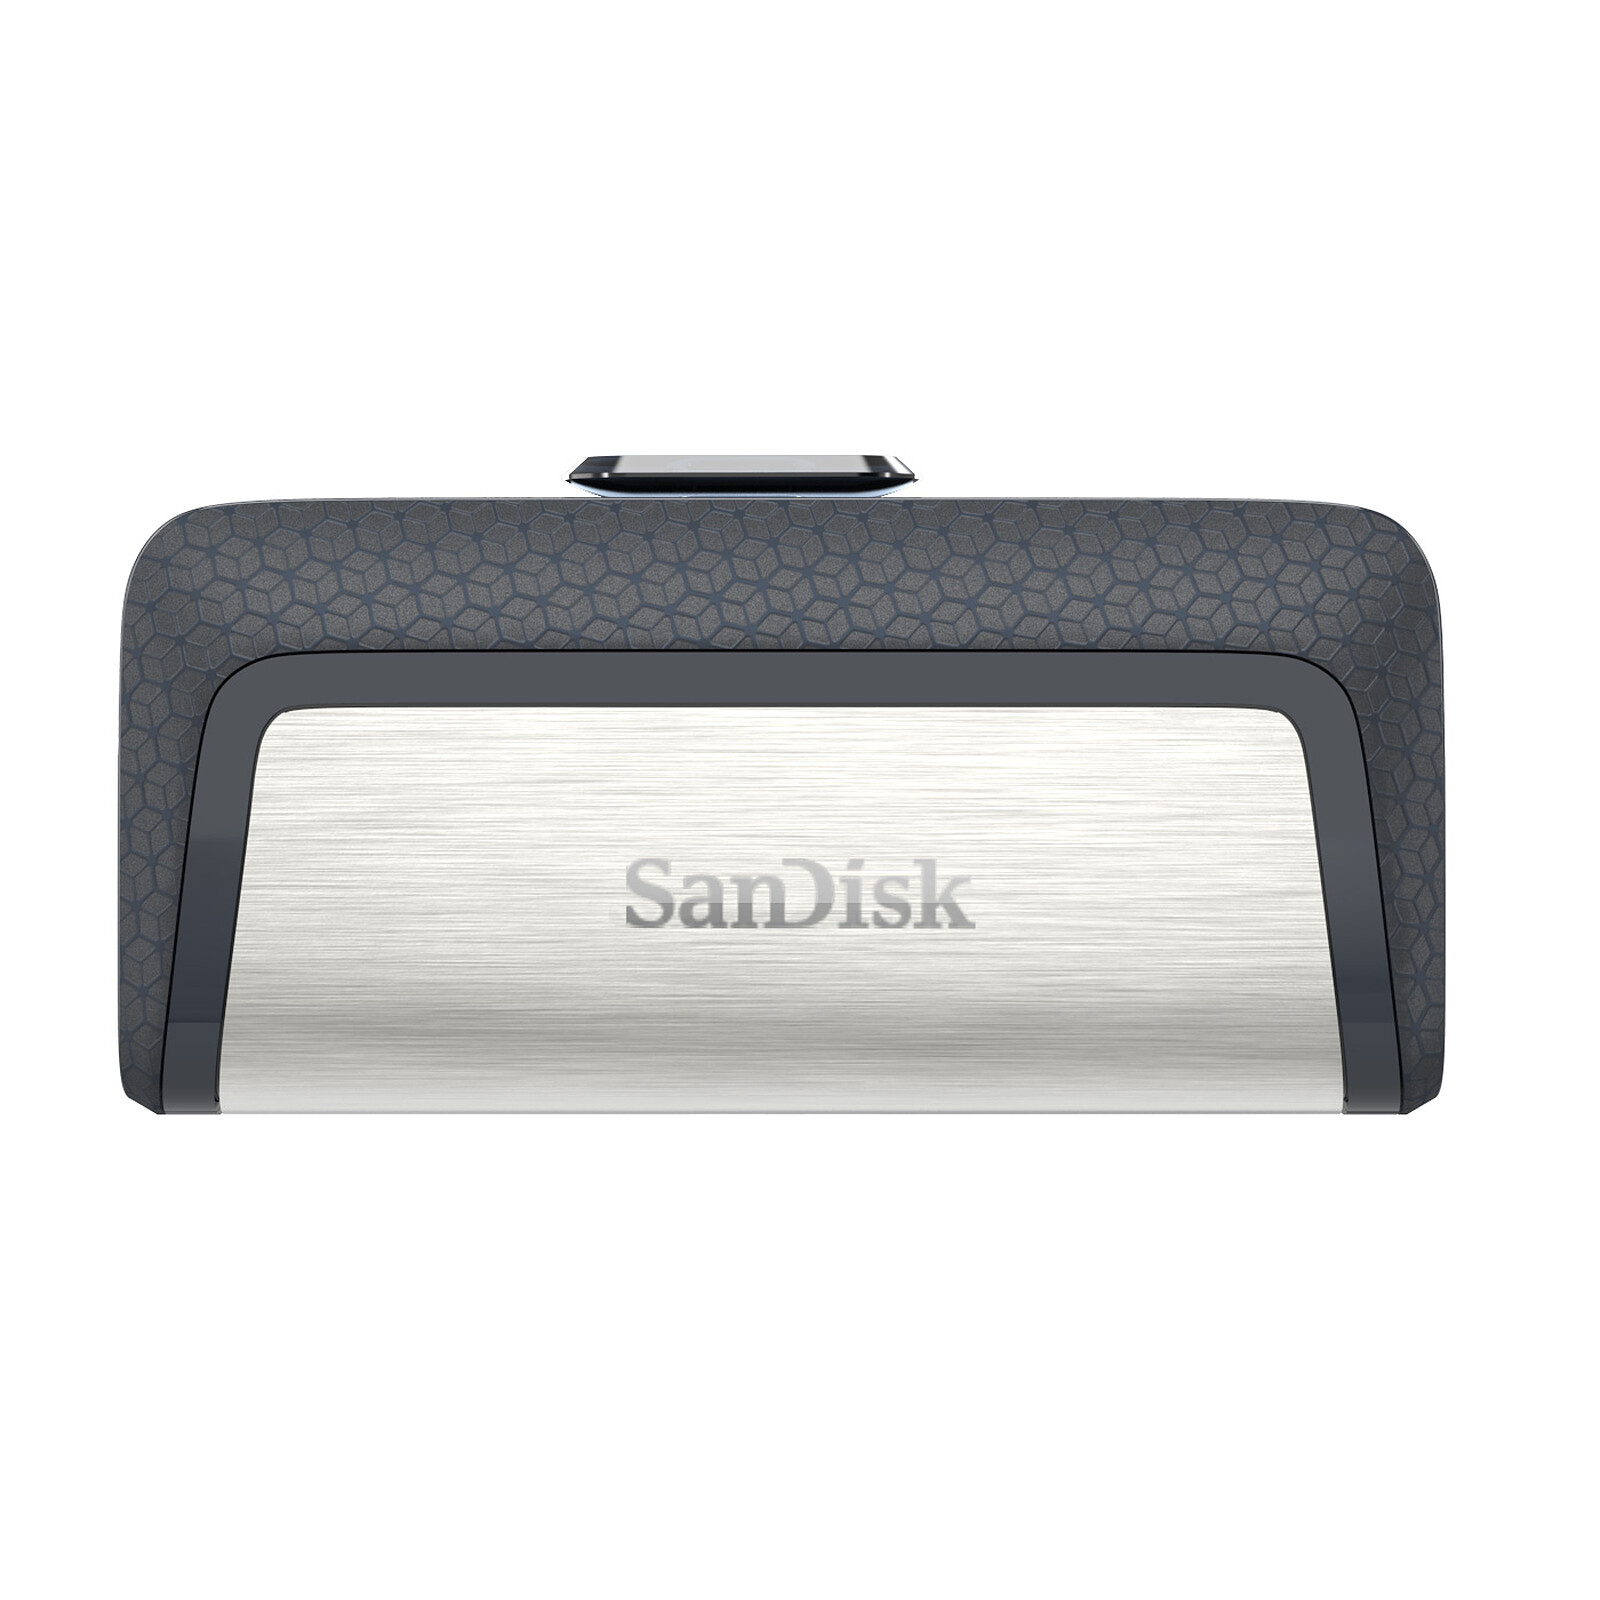 La clé USB 3.1 SanDisk Ultra Fit est à moitié prix chez